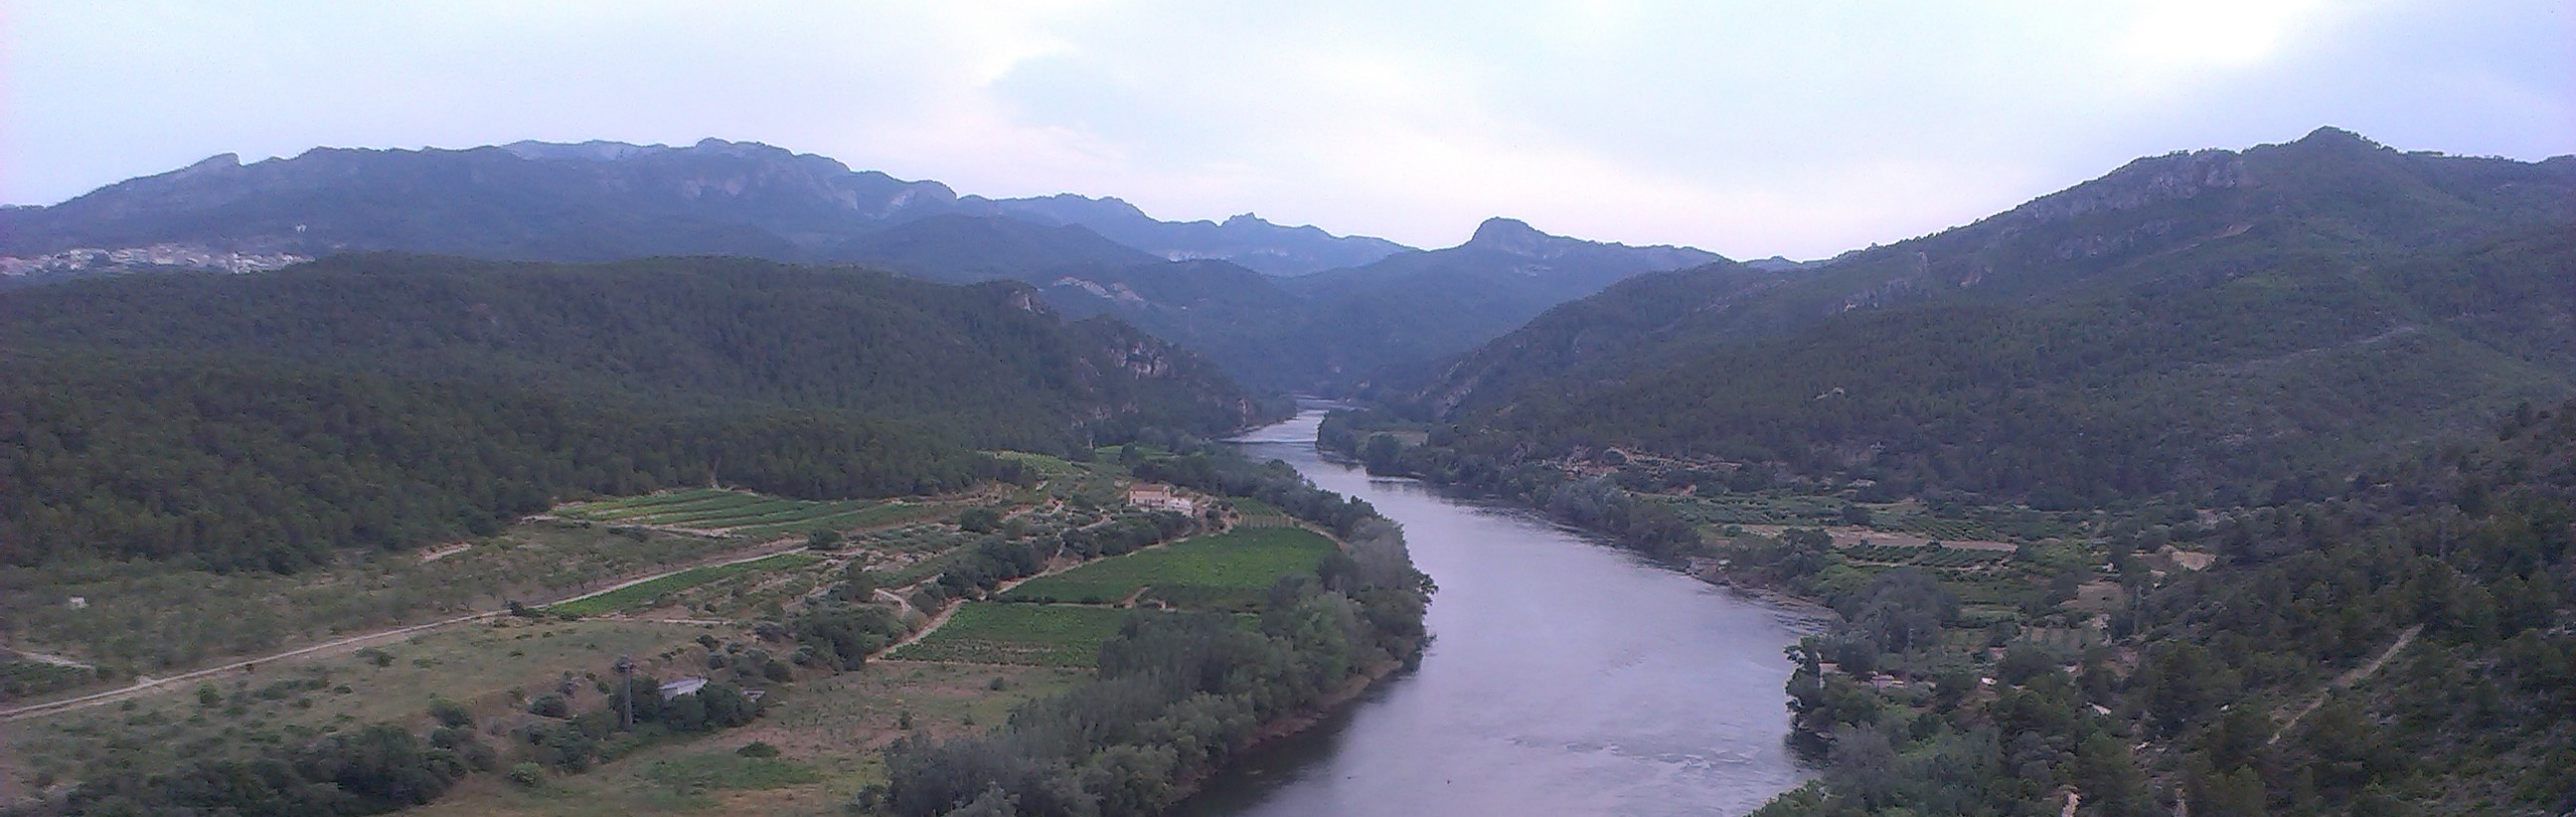 AVISO HIDROLÓGICO - Debido a las lluvias, se intensifica la vigilancia en cauces con cuenca vertiente pequeña y barrancos de casi toda la Cuenca del Ebro